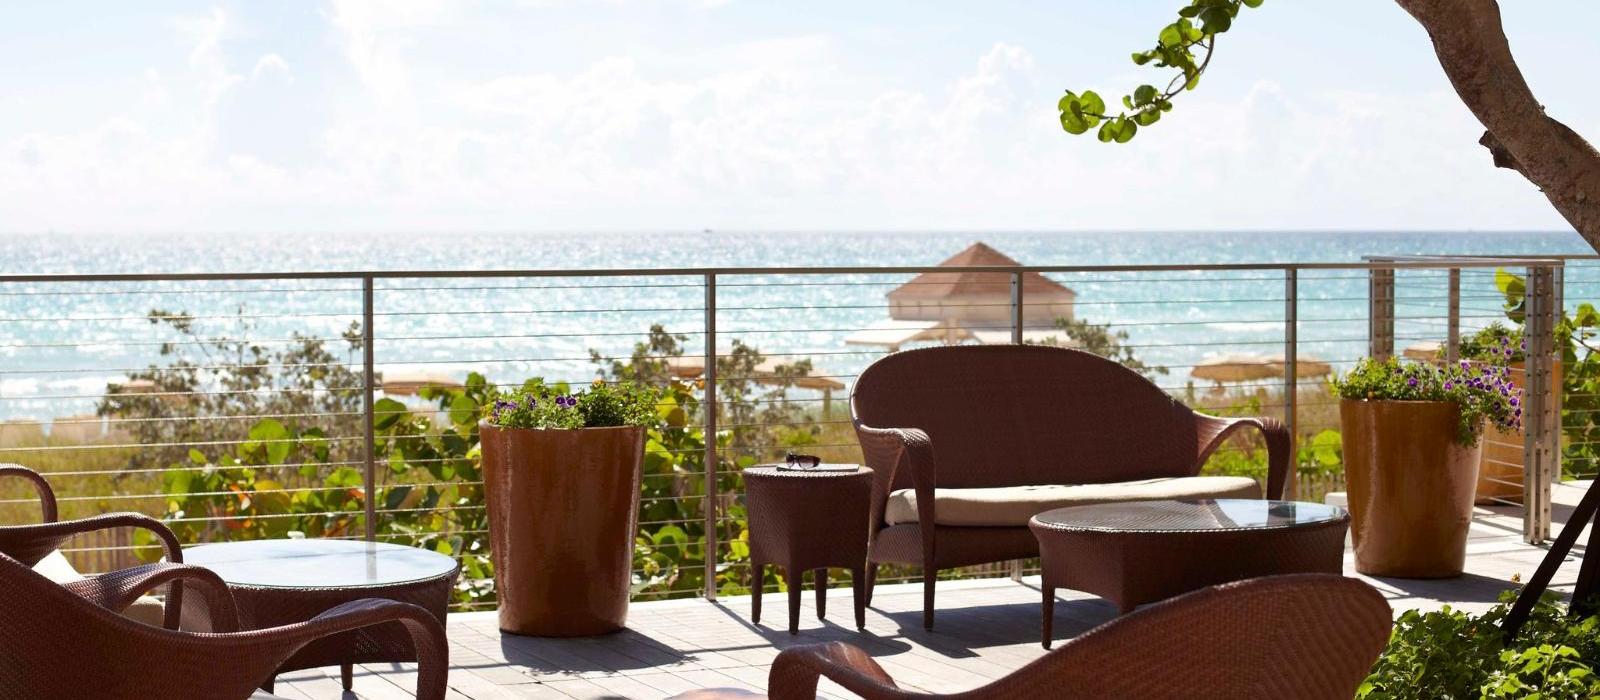 迈阿密钟琴水疗度假酒店(Carillon Miami Wellness Resort) 图片  www.lhw.cn